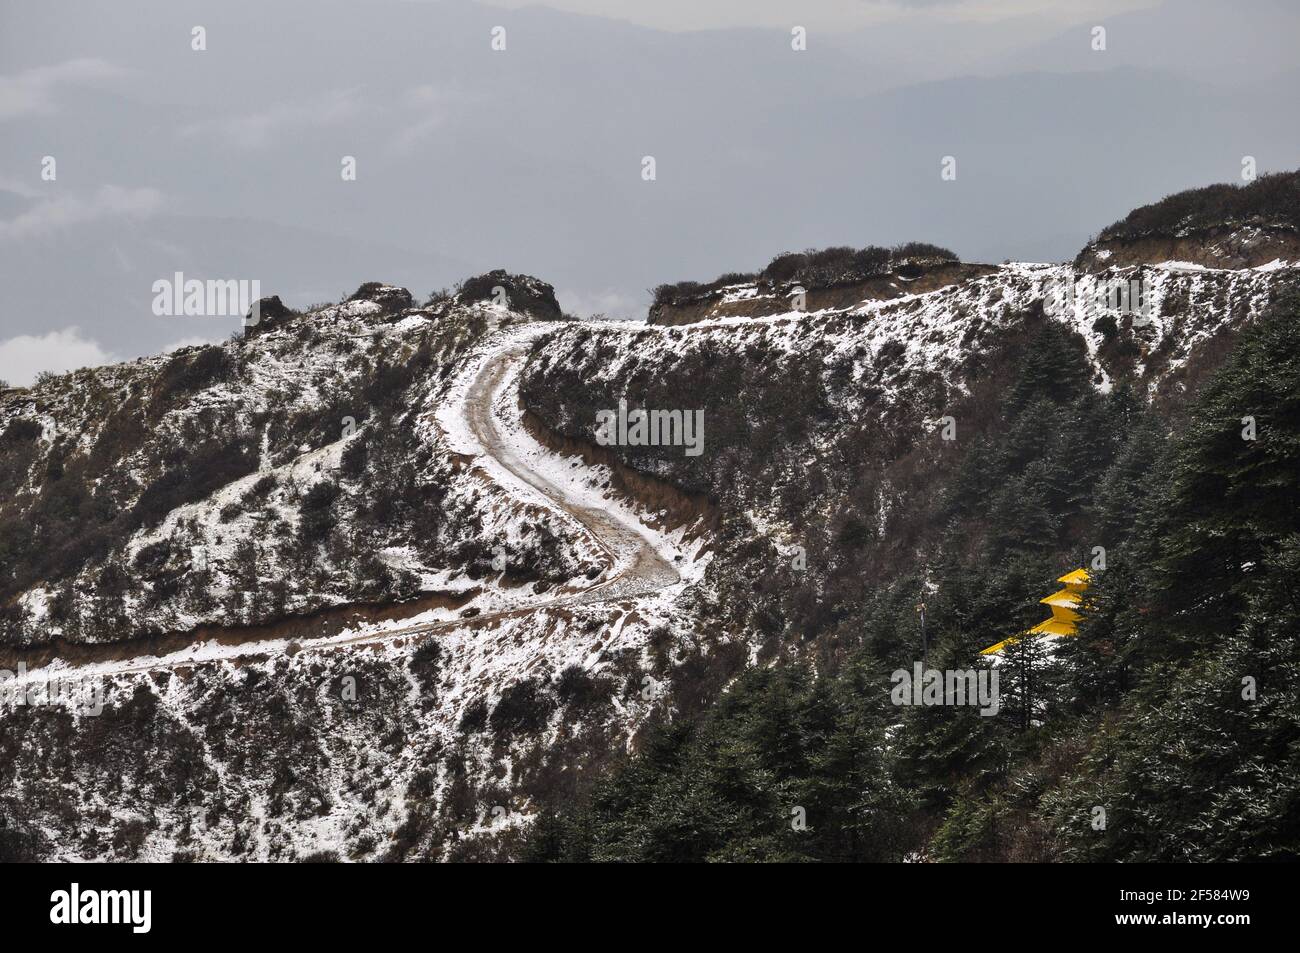 Templo nepalí con techo amarillo en la cima de la colina, camino en espiral cubierto de nieve, camino que conduce al templo Foto de stock